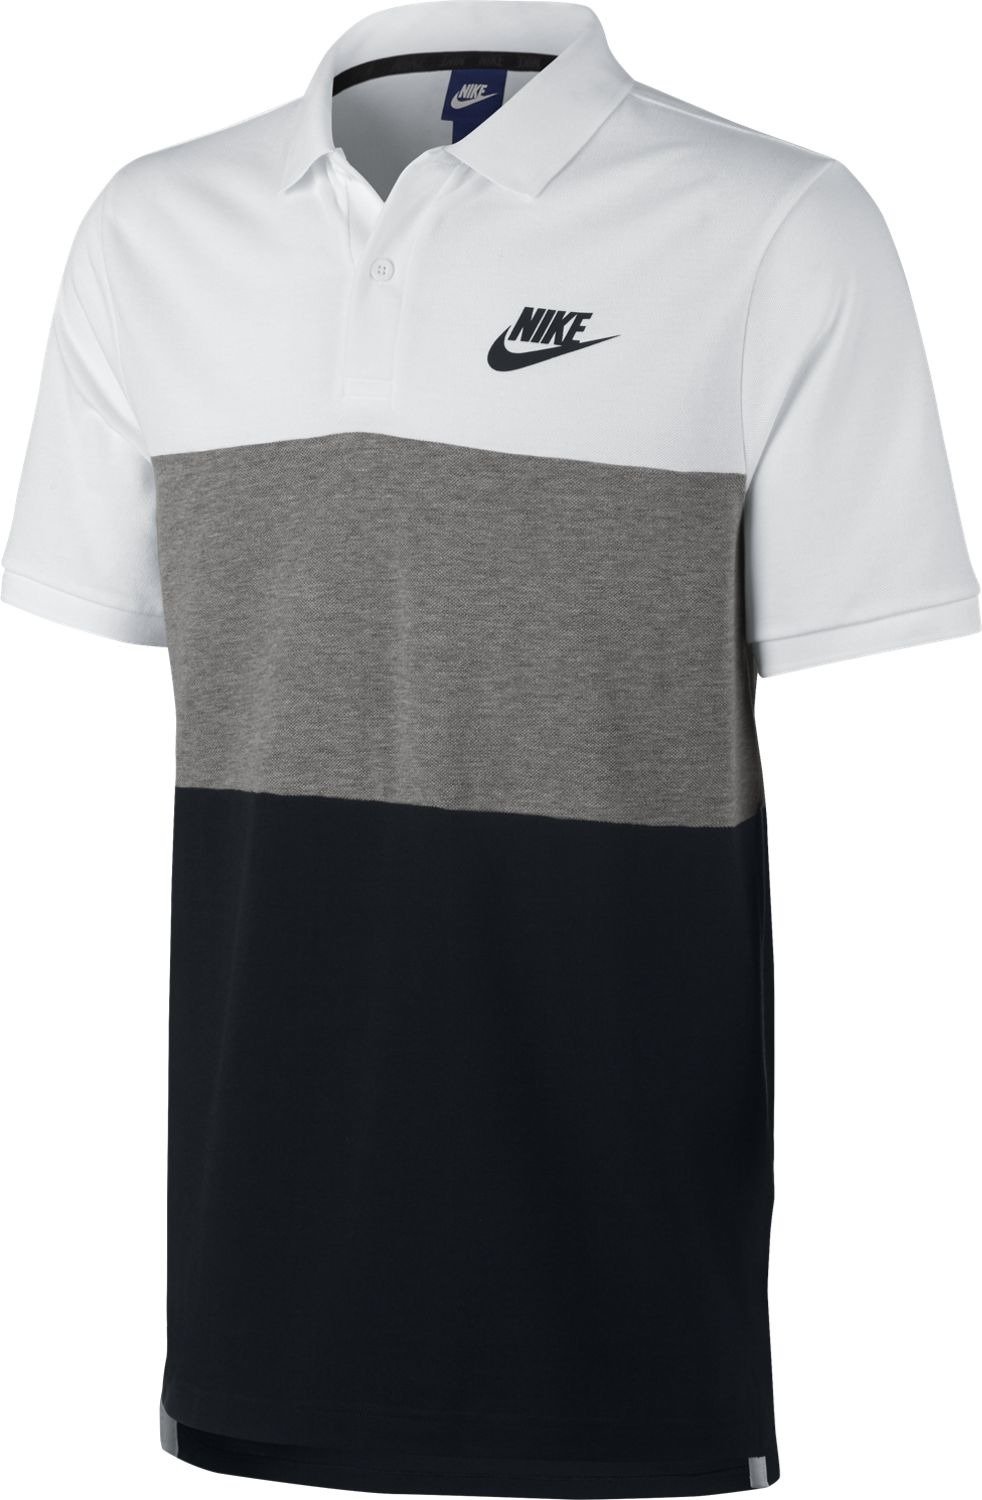 Polo shirt Nike M NSW POLO PQ MATCHUP 